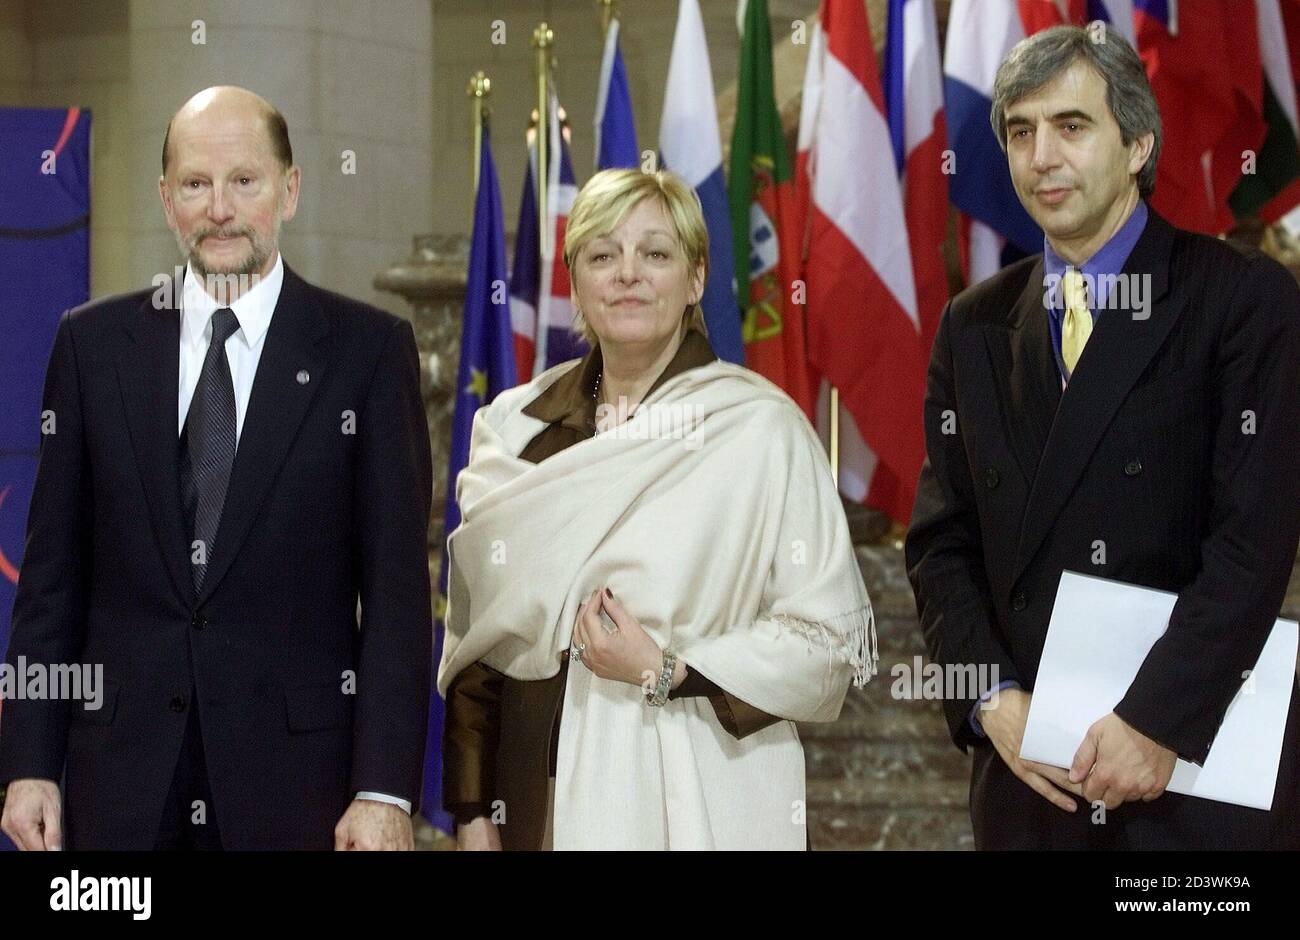 Le Premier ministre bulgare Simeon Saxe Cobourg Gotha et le ministre des Affaires étrangères Solomon Isaak Passi (R) sont accueillis par le vice-ministre belge des Affaires étrangères Annemie Neyts (C) au début de la deuxième journée d'un sommet des chefs d'État de l'Union européenne au Palais royal de Laeken, à Bruxelles, le 15 décembre 2001. Samedi, les dirigeants de l'UE ont entamé une journée de négociations difficiles sur la forme future du bloc et sur la manière de le vendre à un public européen apathique. REUTERS/STRINGER HRM/AA Banque D'Images